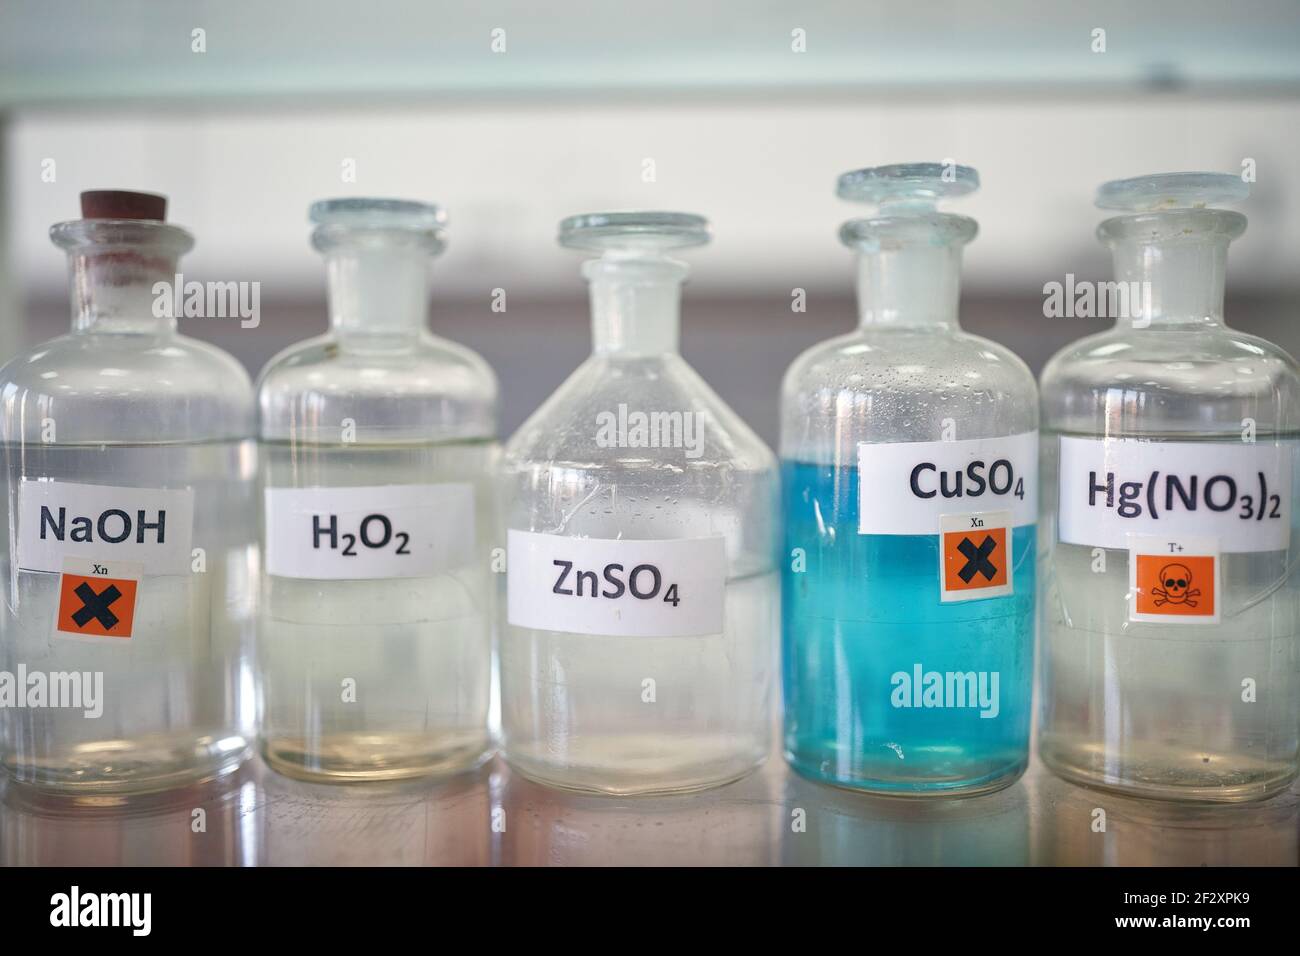 Gefährliche Chemikalien auf dem Regal in einer sterilen Umgebung des Labors. Chemie, Labor, Chemikalien Stockfoto